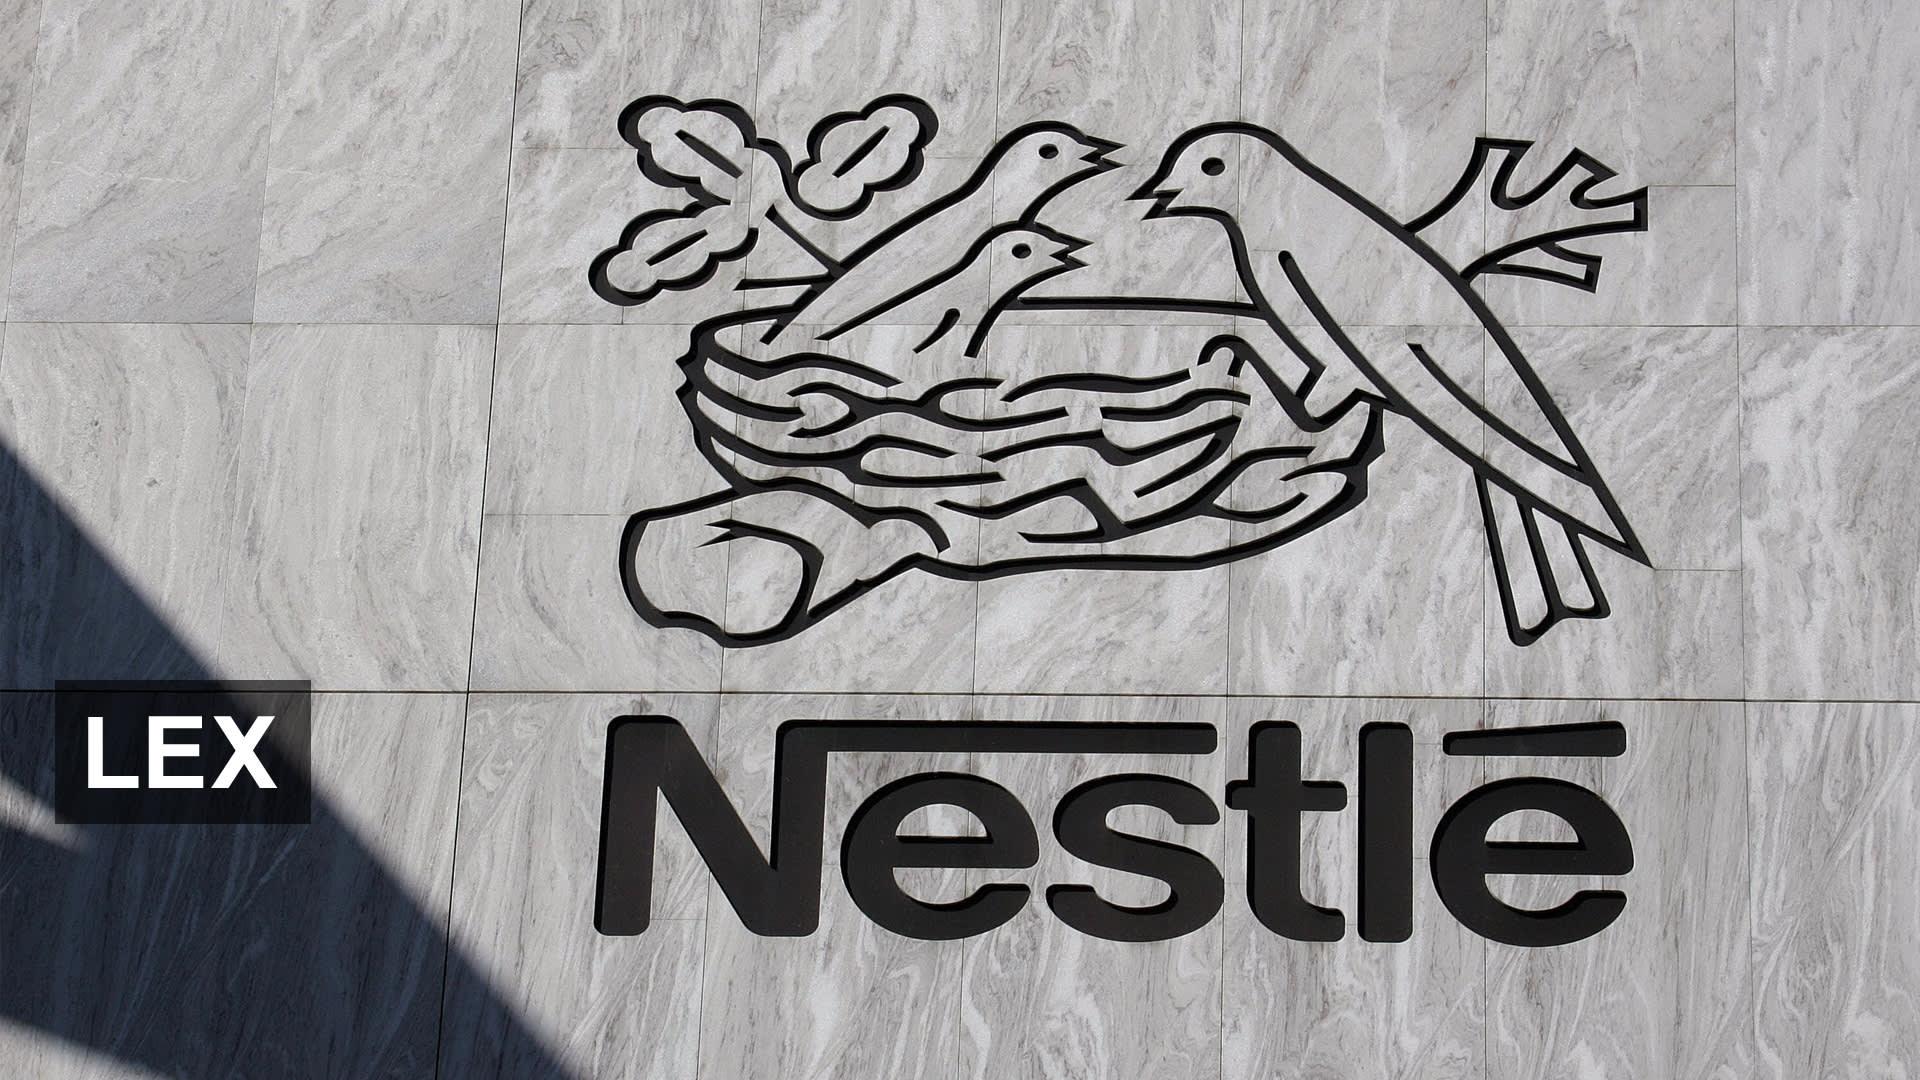 Still a sweet spot for Nestlé